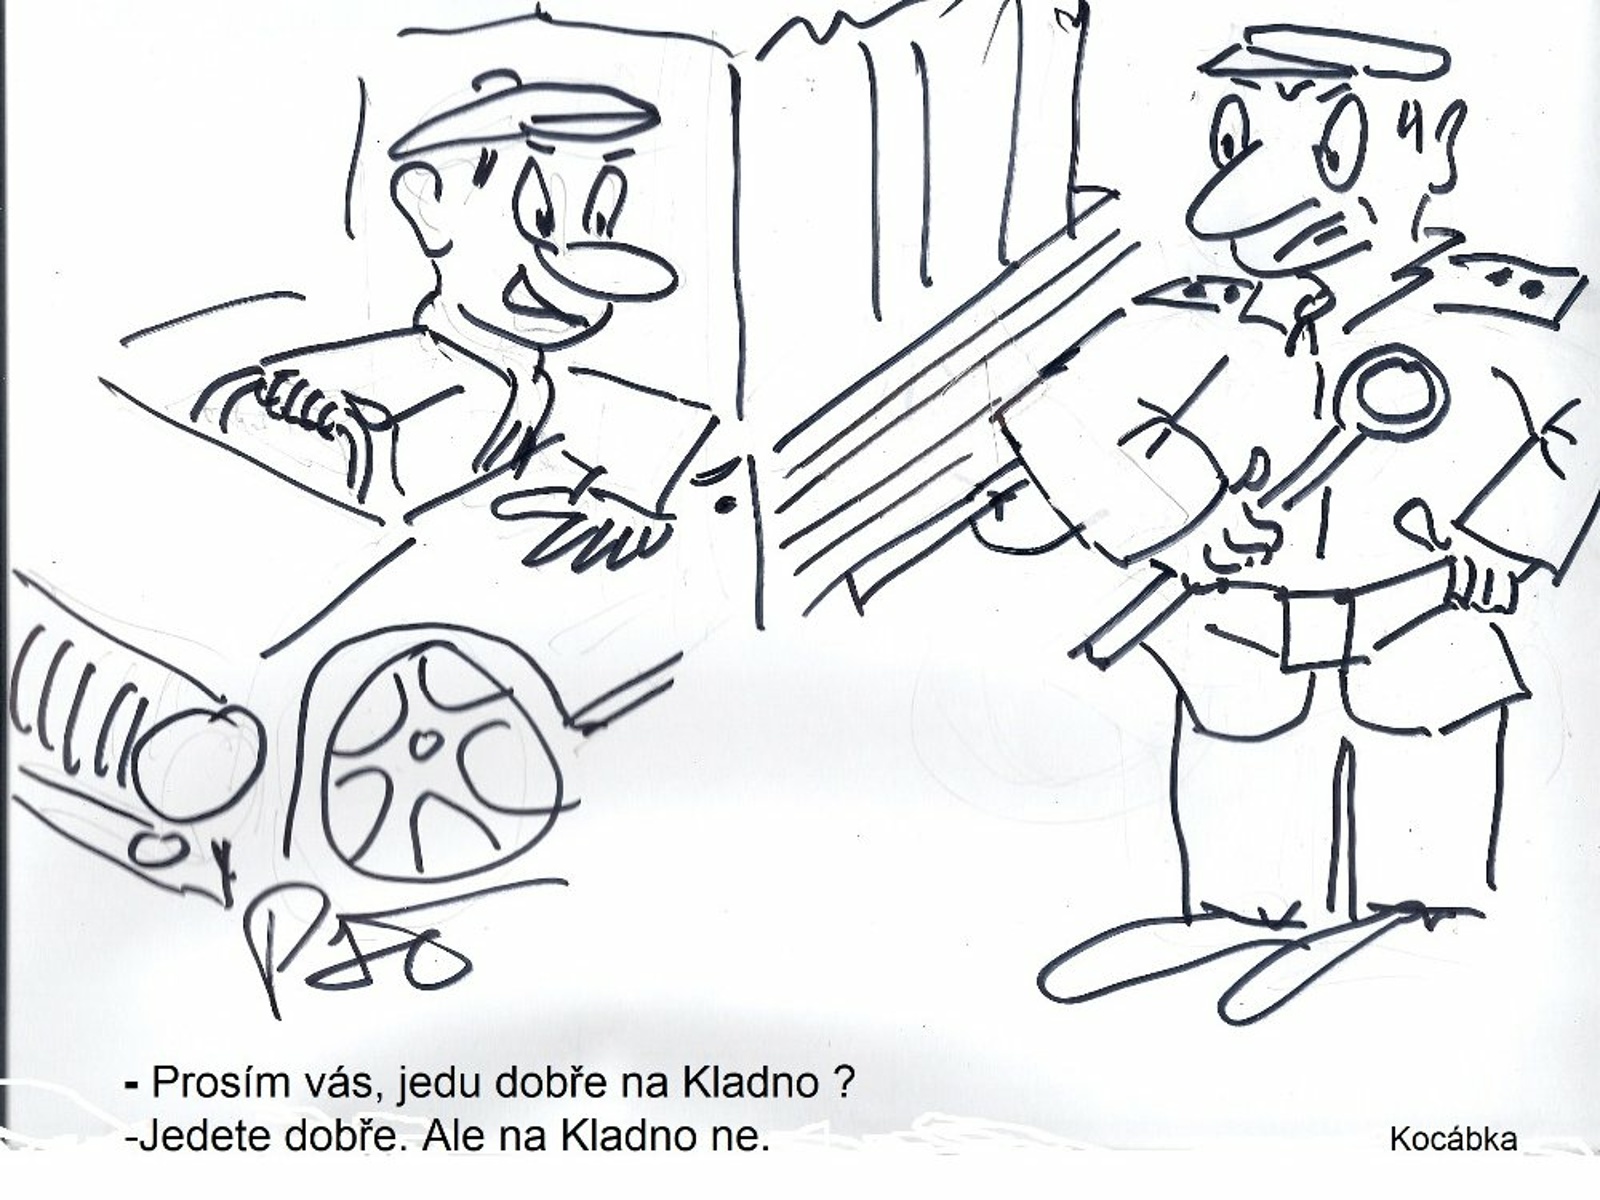 Užijte si nové kreslené vtipy Jiřího Cinkeise a Josefa Pšeničky -  Příbramský deník